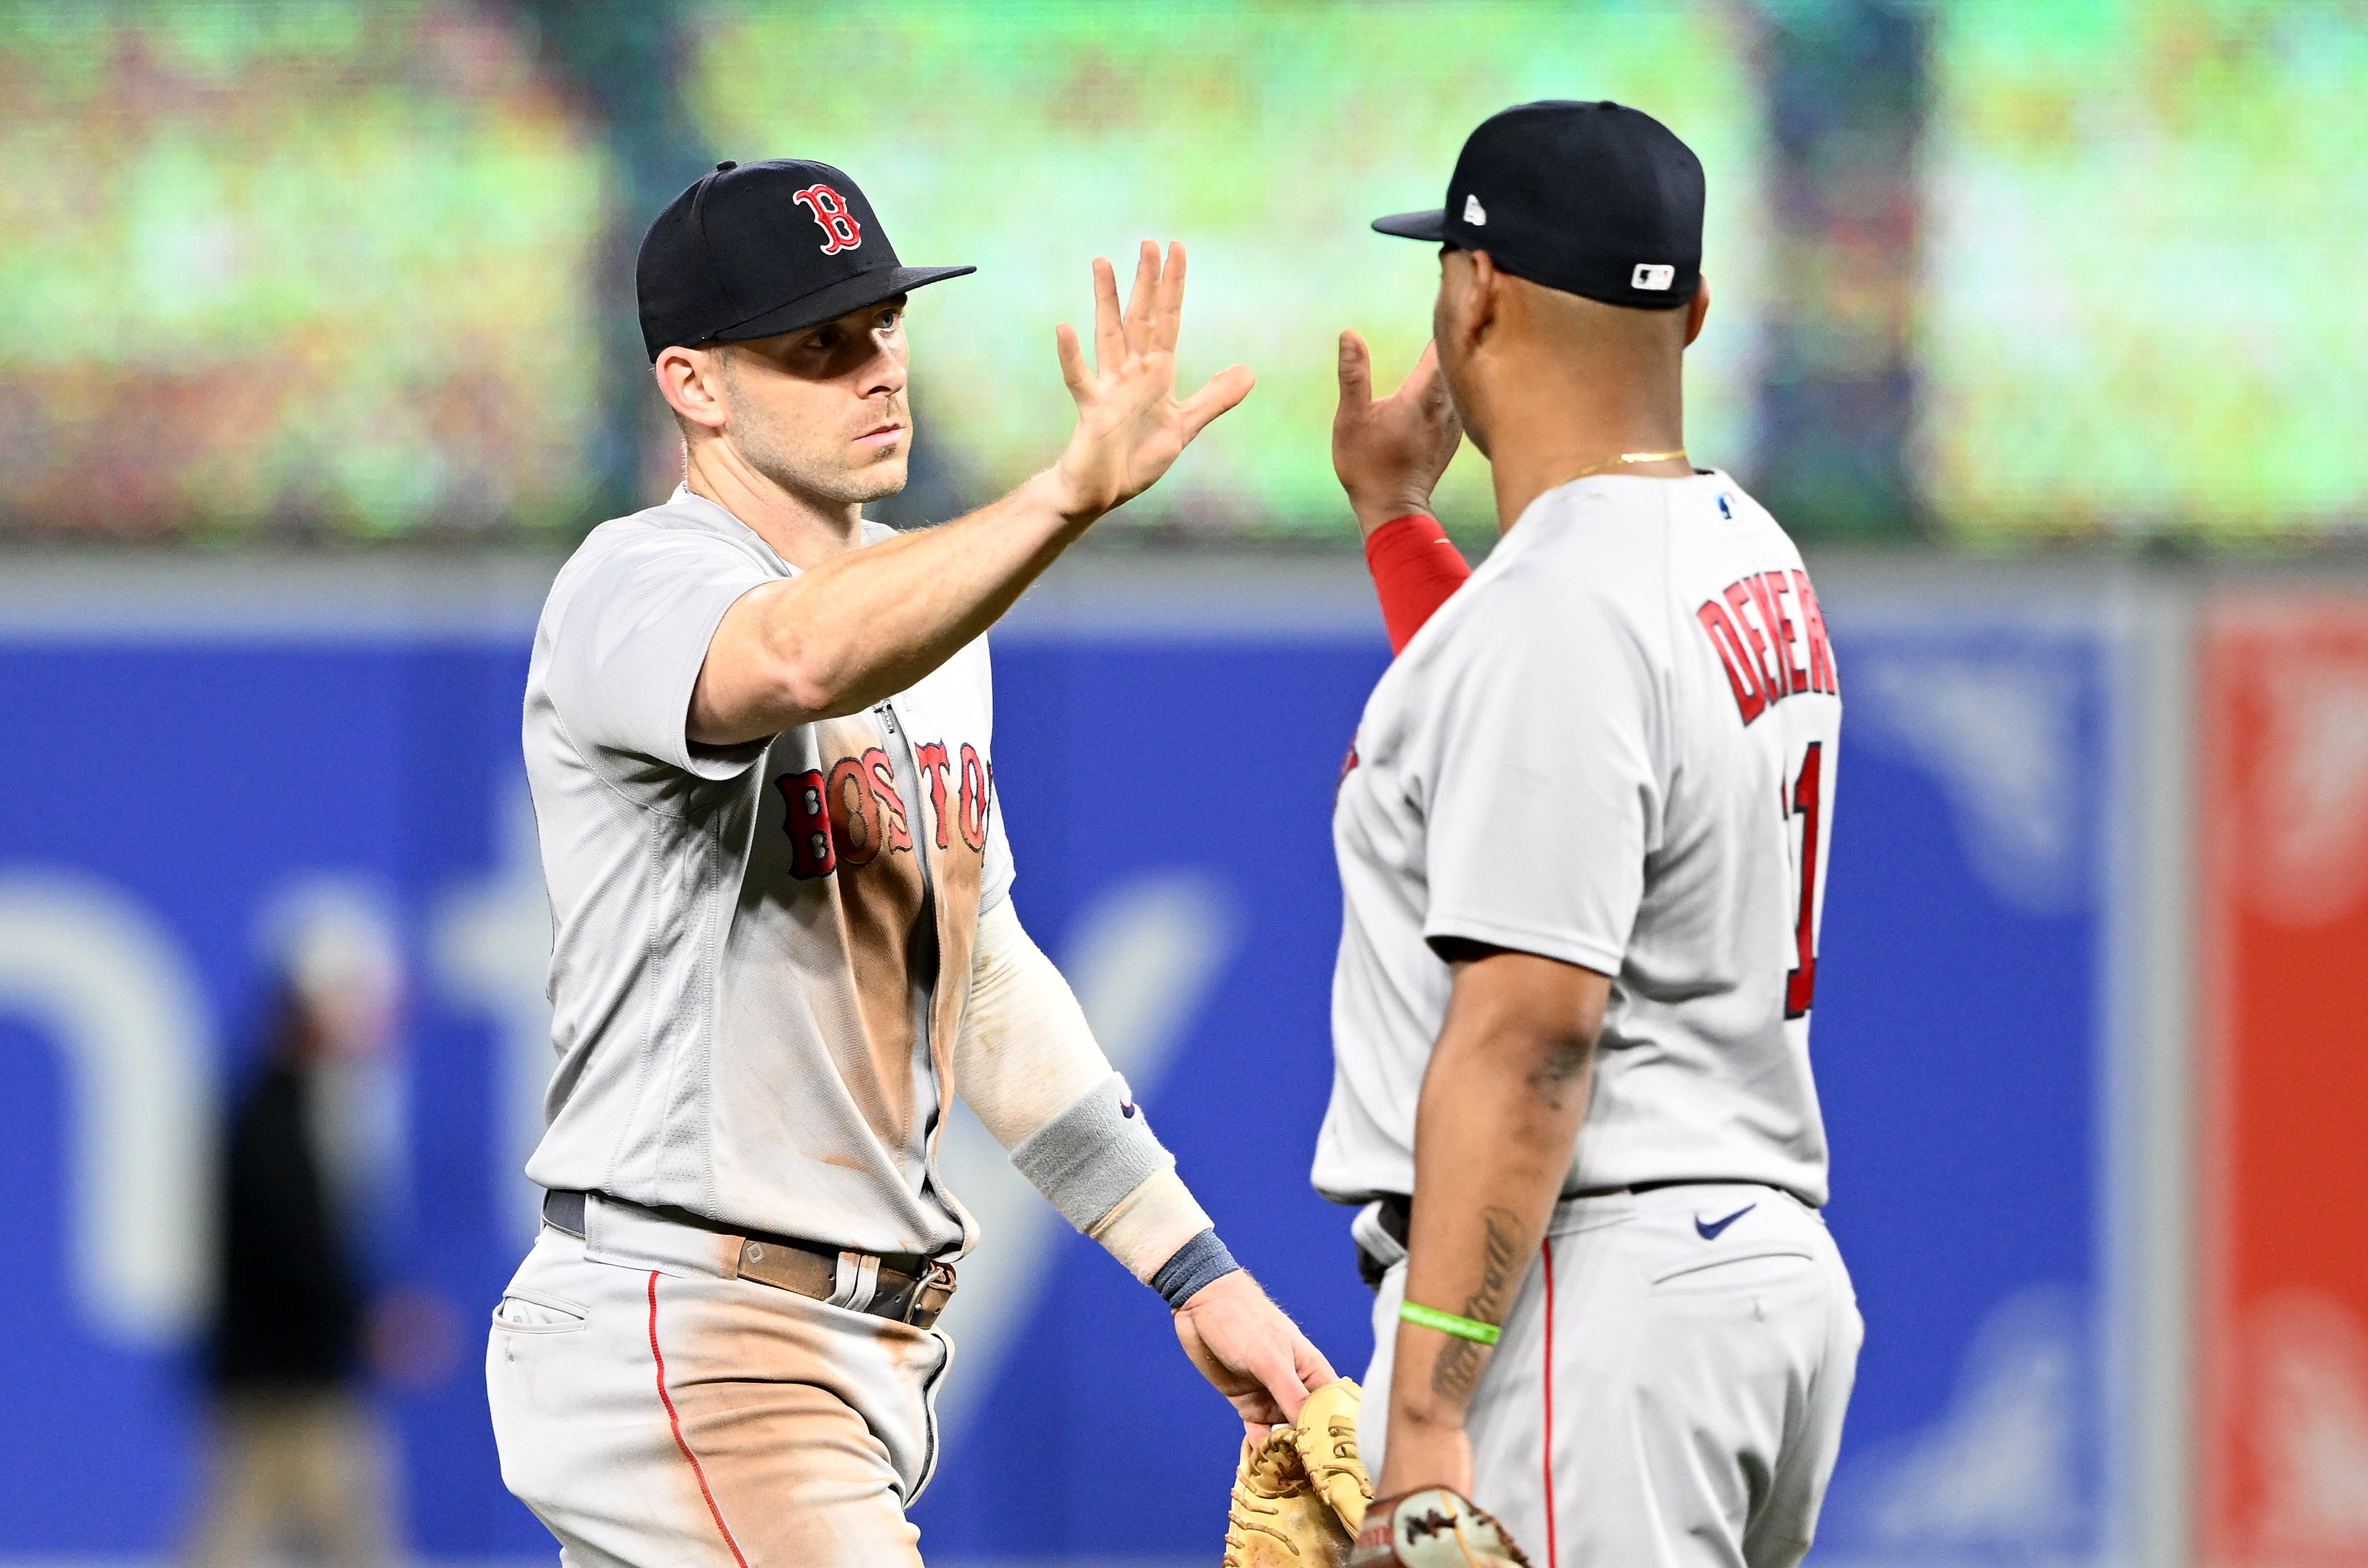 Varitek ranks as the greatest catcher in Red Sox history - Baseball Egg